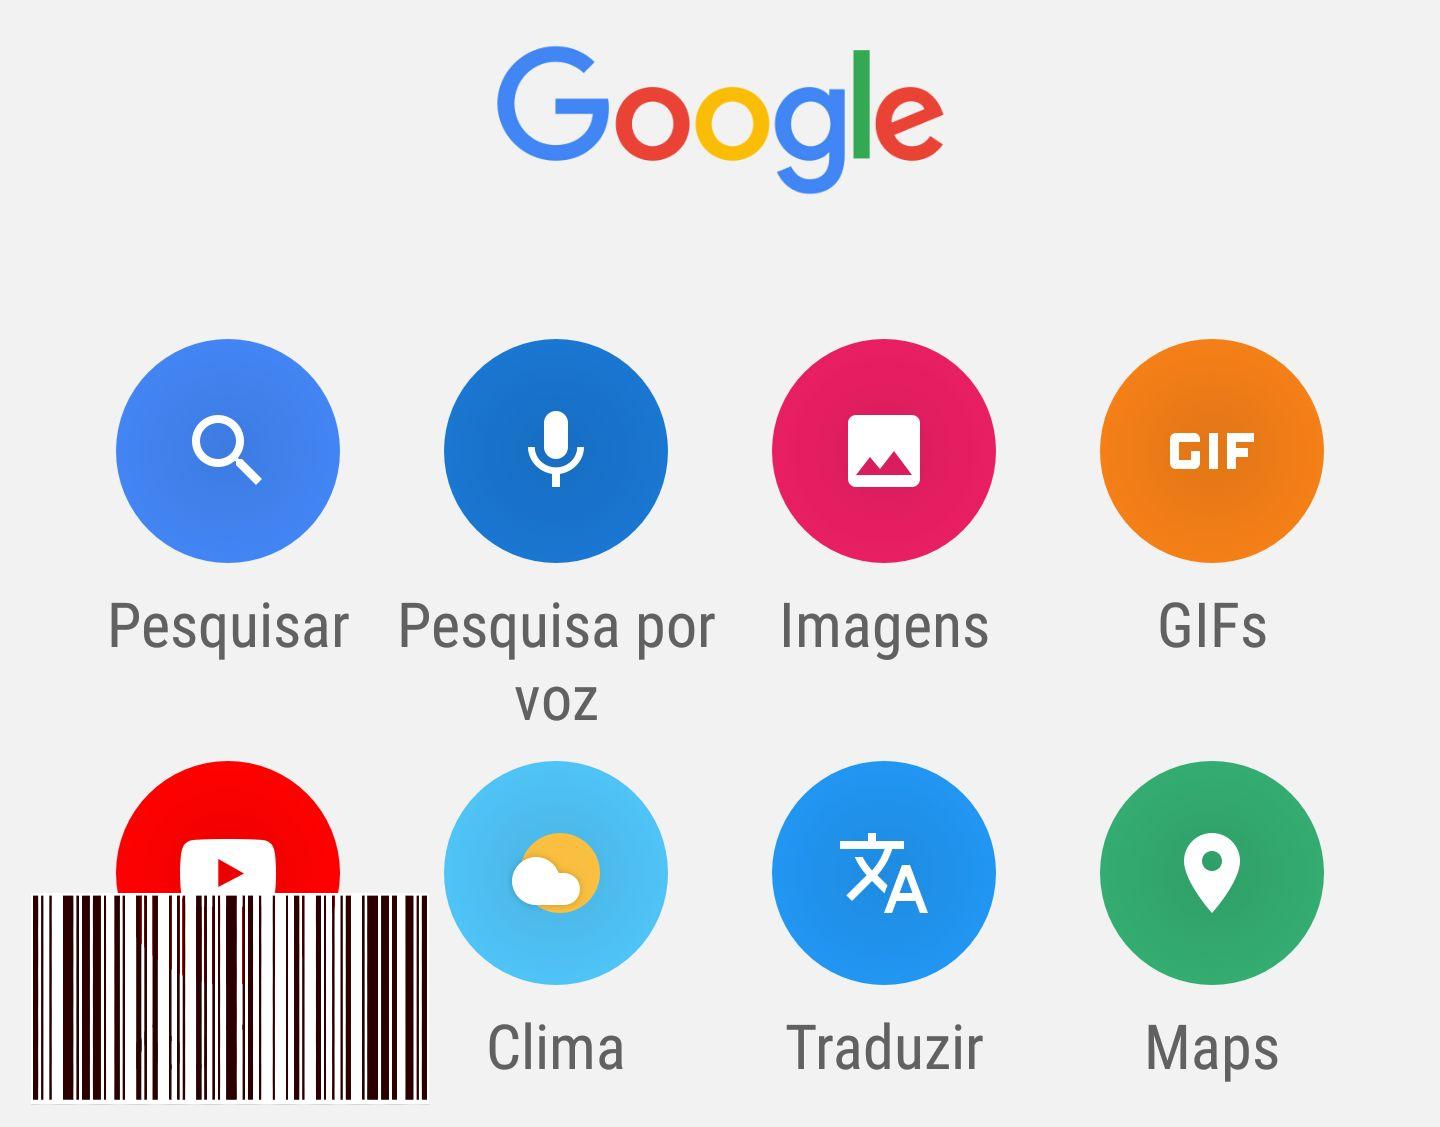 يوفر Google Go وصولاً سريعًا إلى خدمات Google والتطبيقات المفضلة